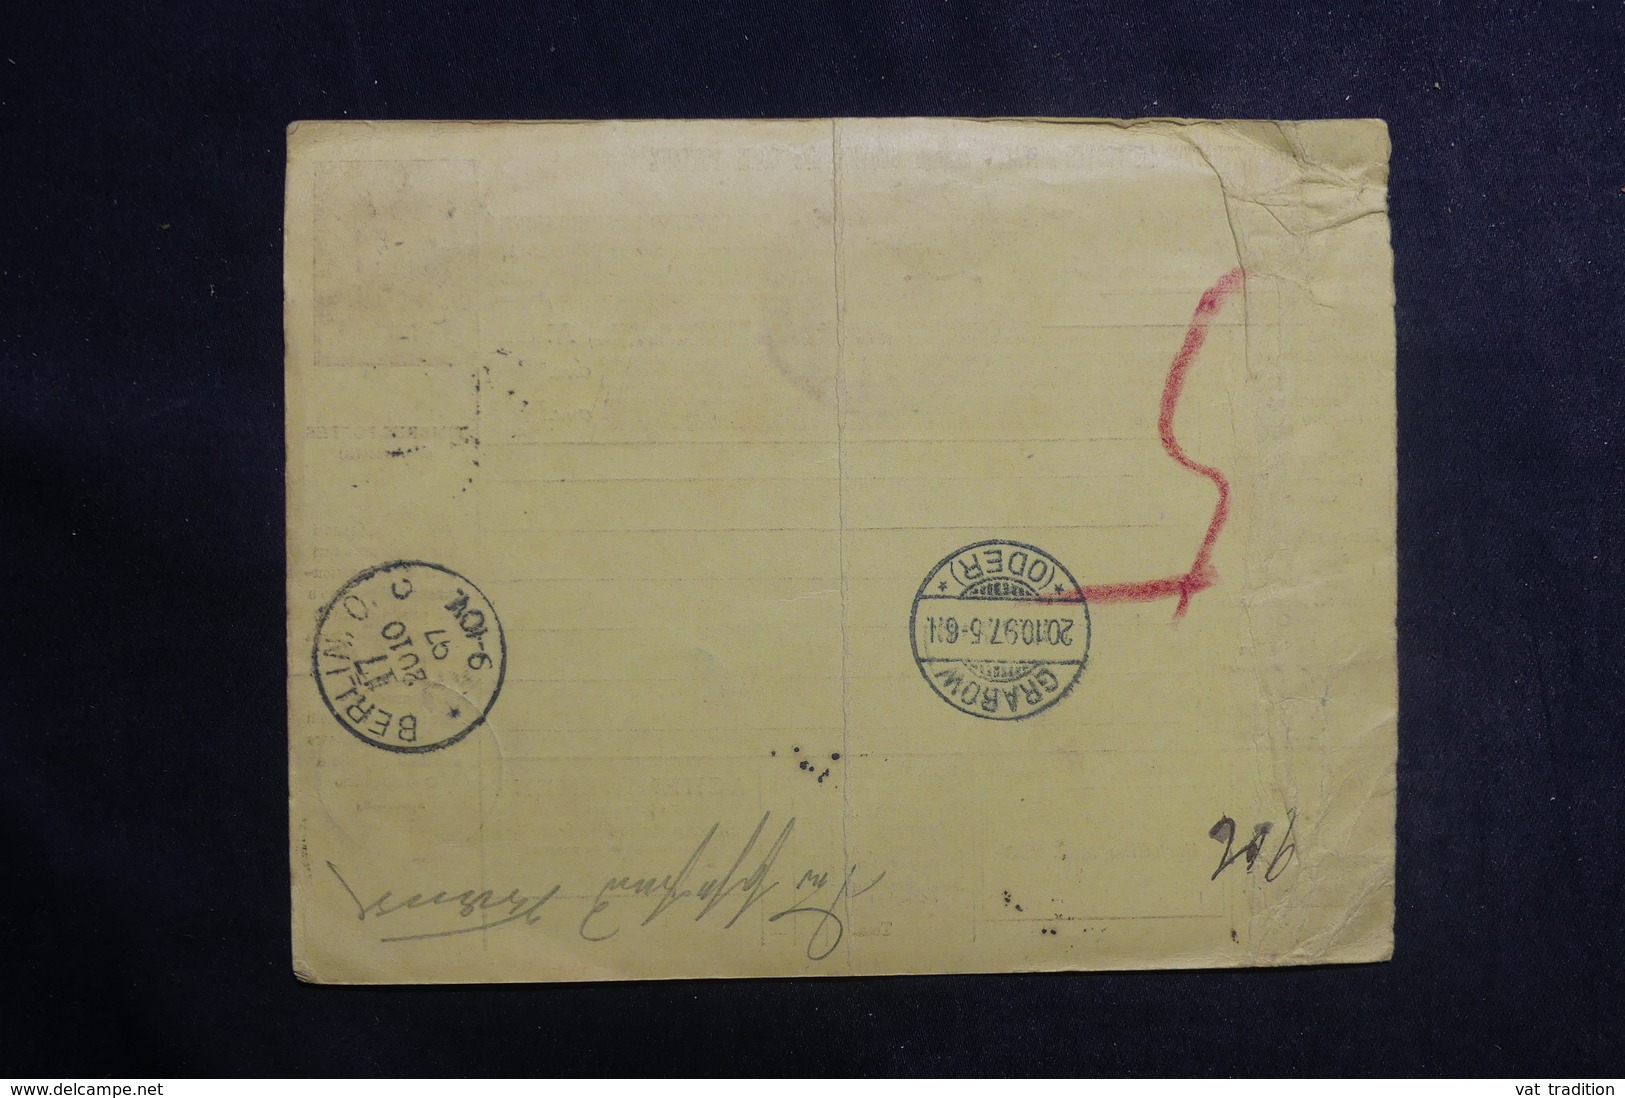 ITALIE - Bulletin De Colis Postal De Napoli Pour L' Allemagne En 1897 - L 41140 - Postal Parcels